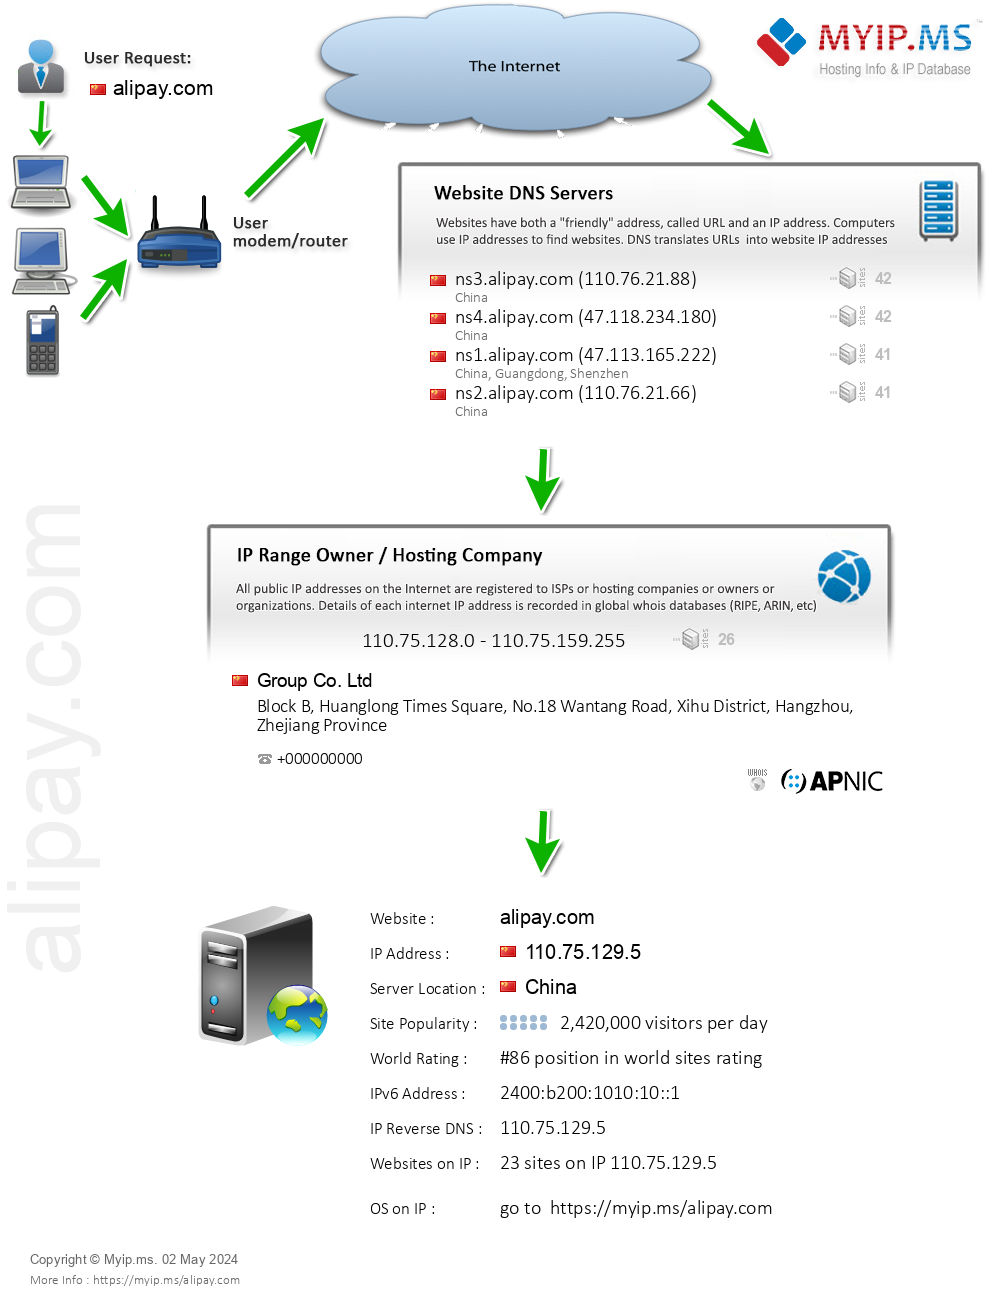 Alipay.com - Website Hosting Visual IP Diagram